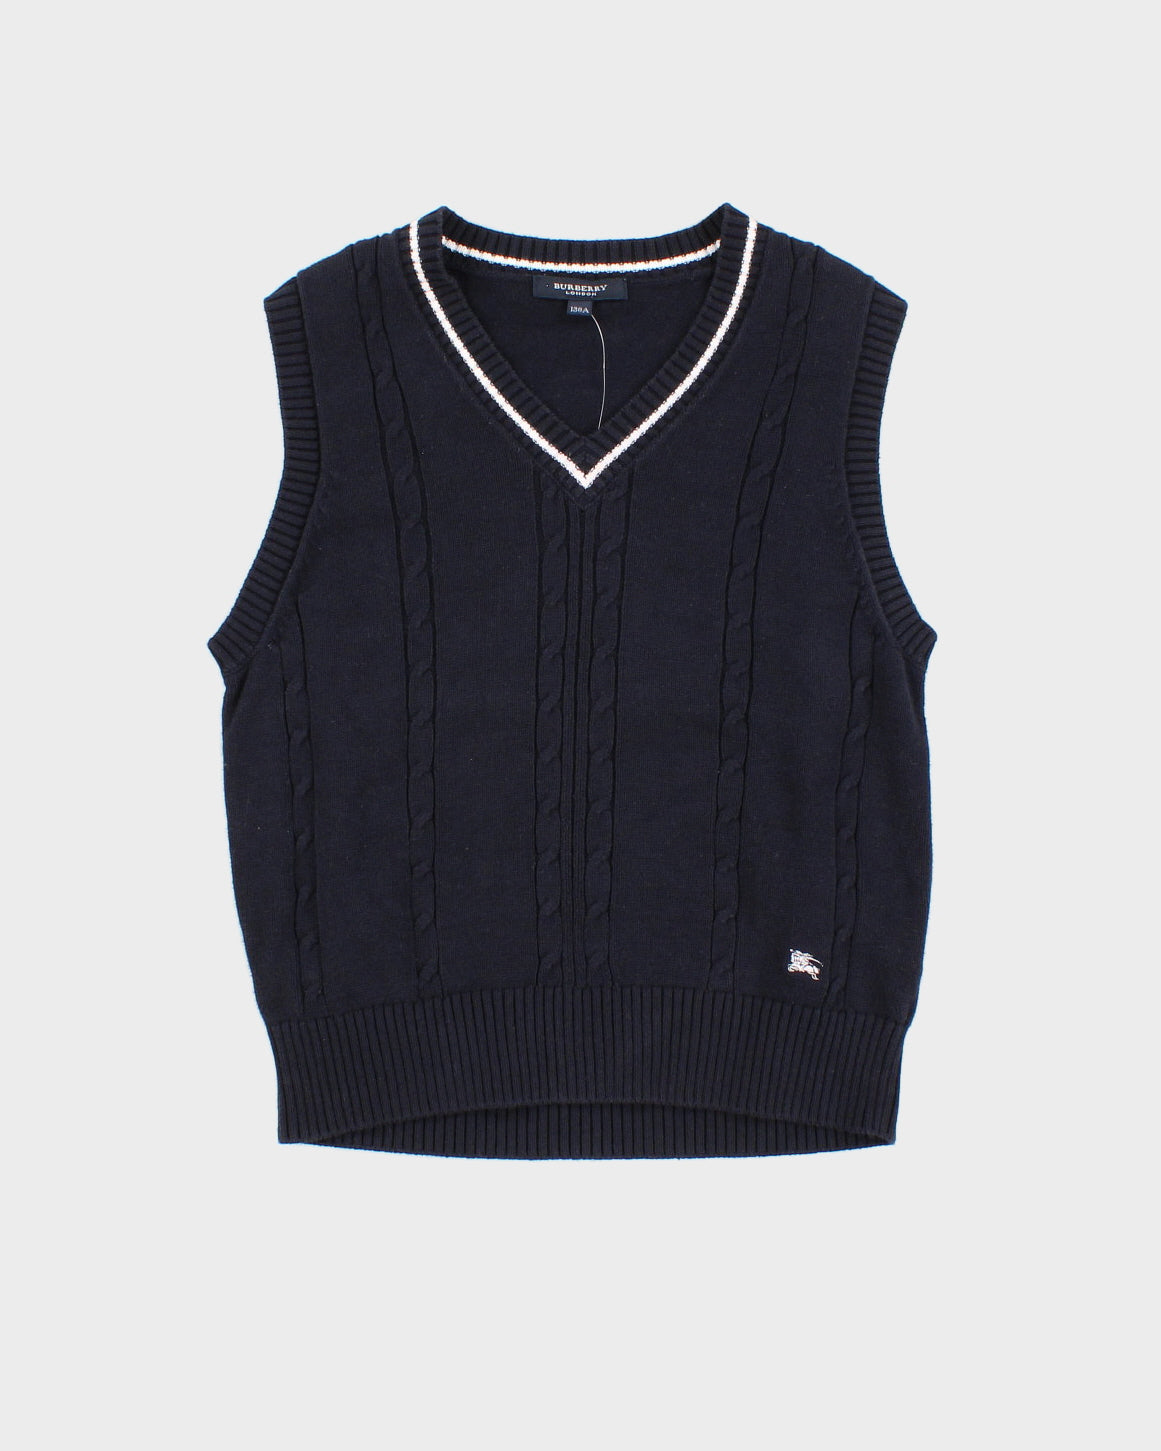 Children's Navy Burberry Sweater Vest – Rokit